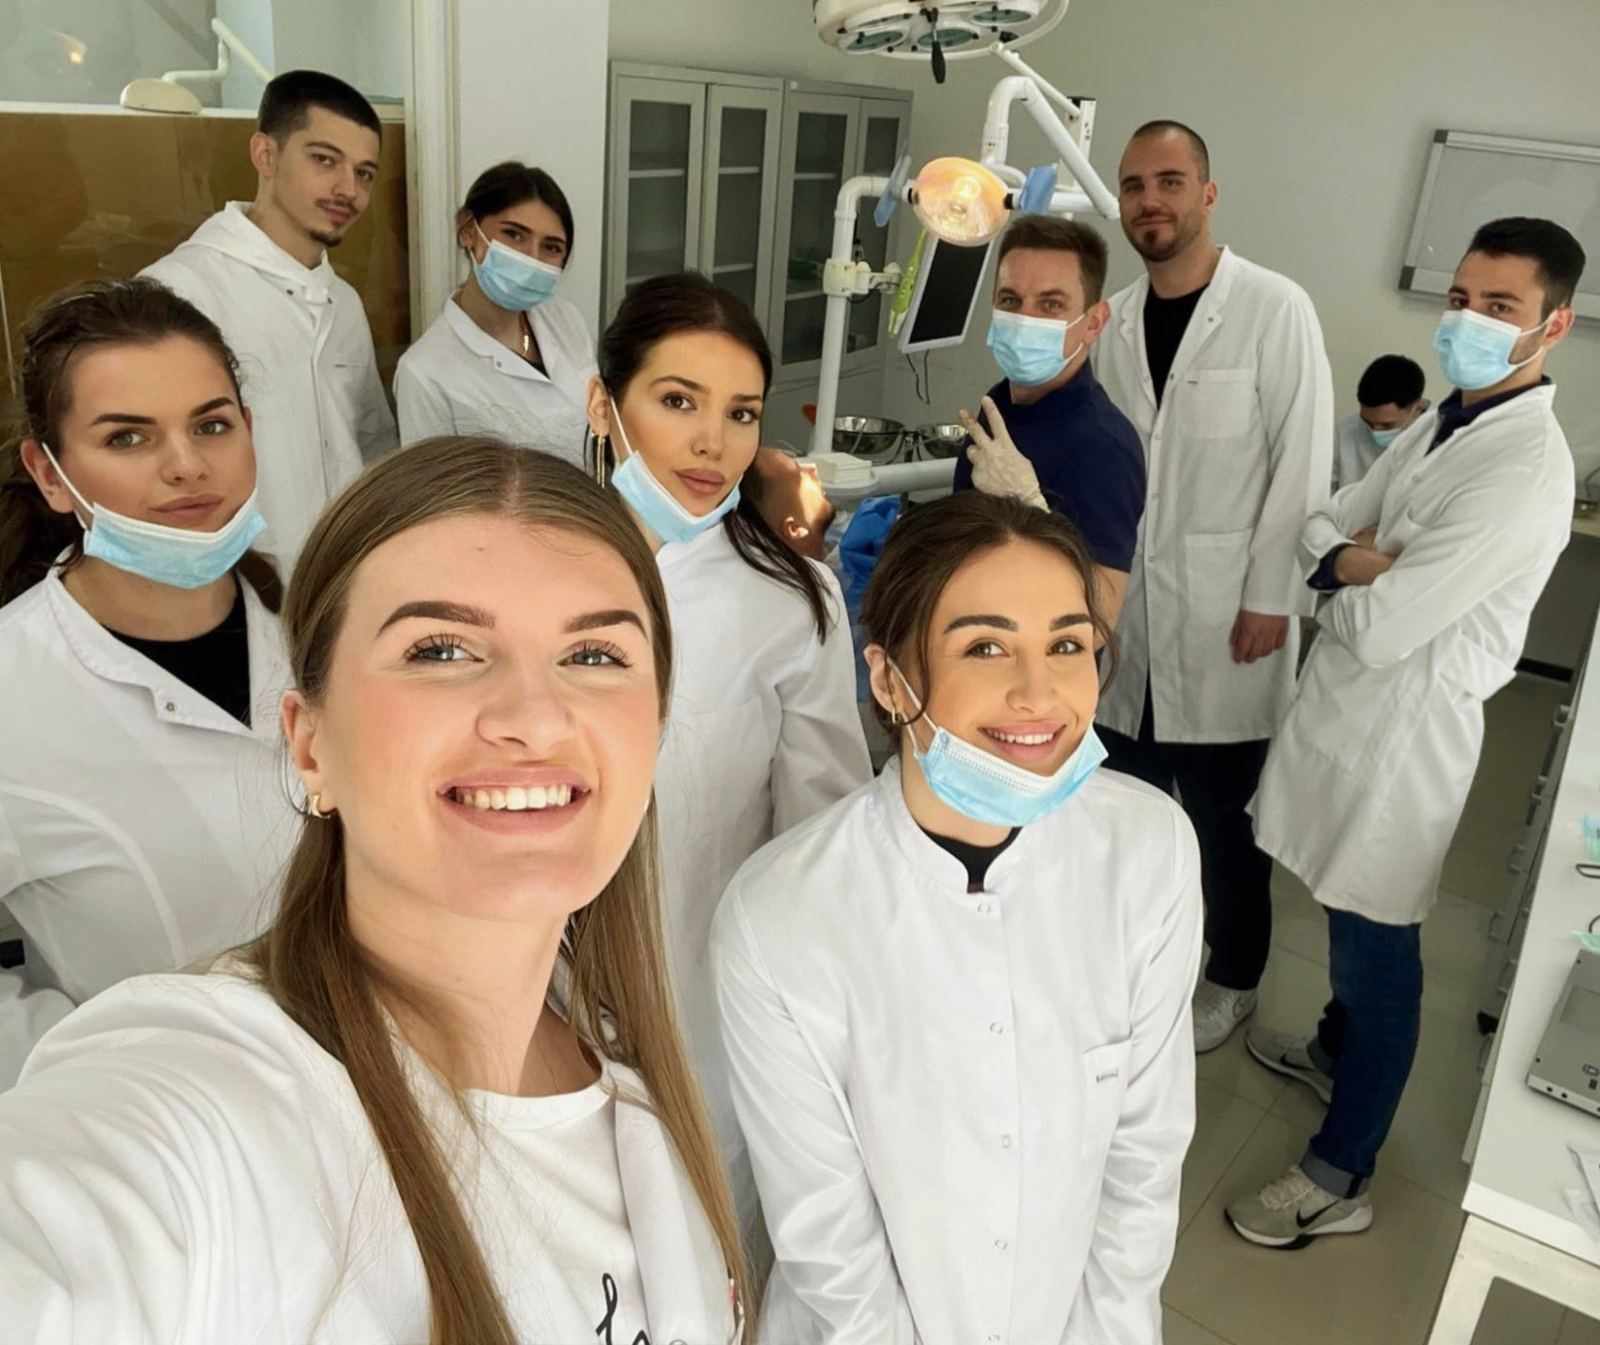 Studentë dhe profesorë të Stomatologjisë kryejnë me sukses operacionin “Op. Apicoectomia” në Poliklinikën Specialistike të Stomatologjisë në UBT